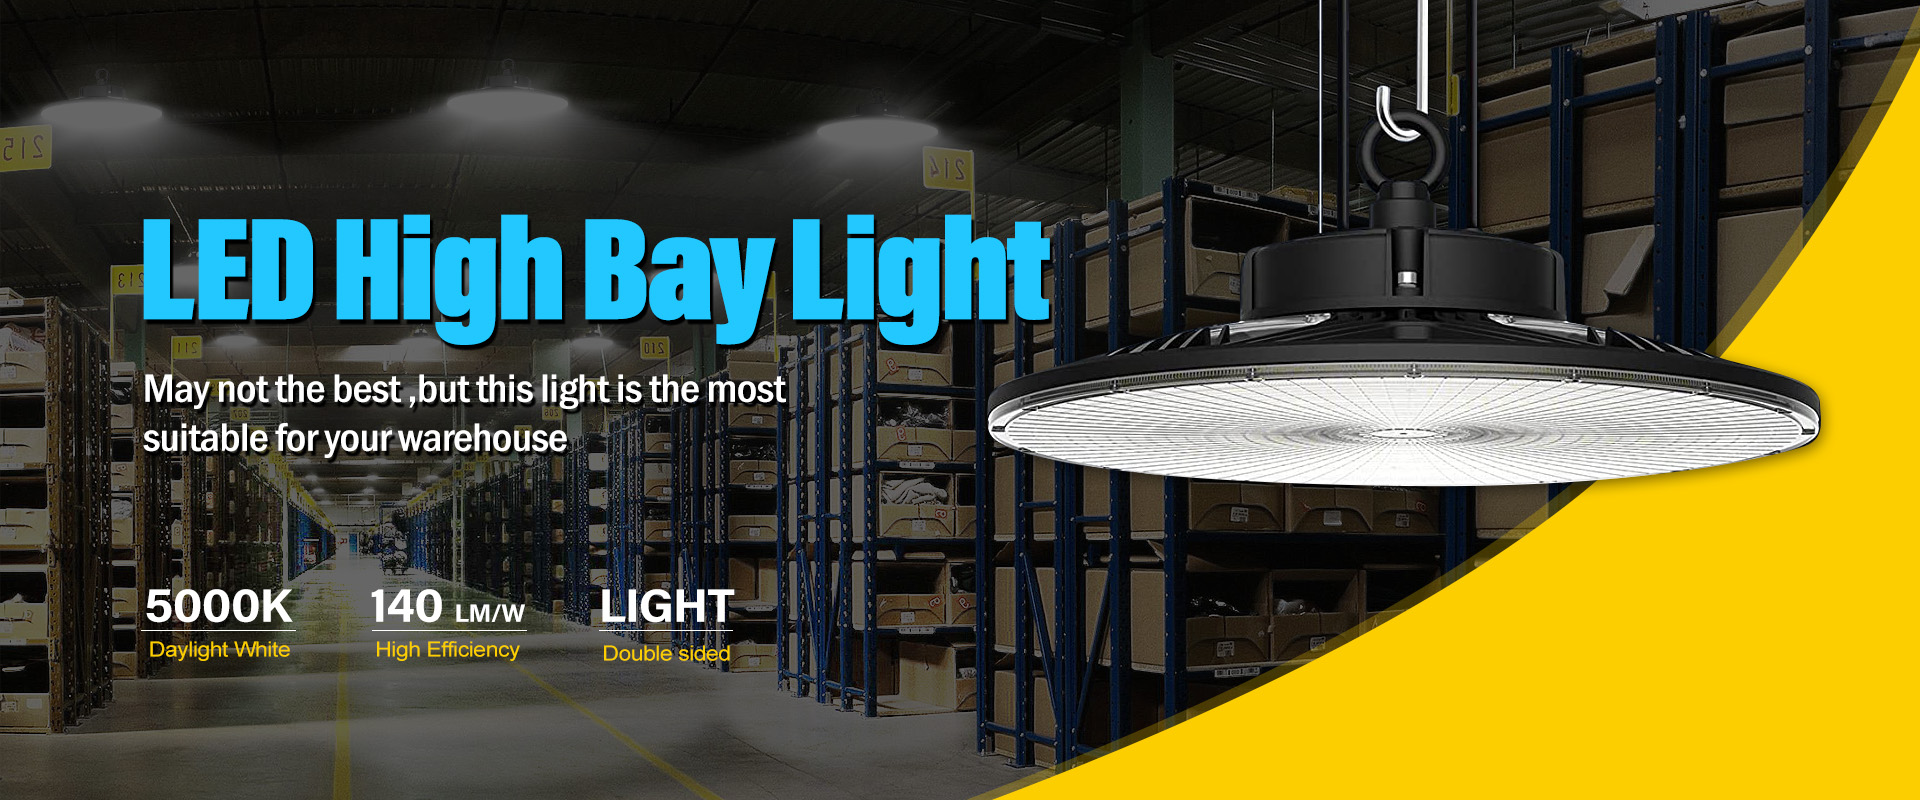 led-high-bay-light